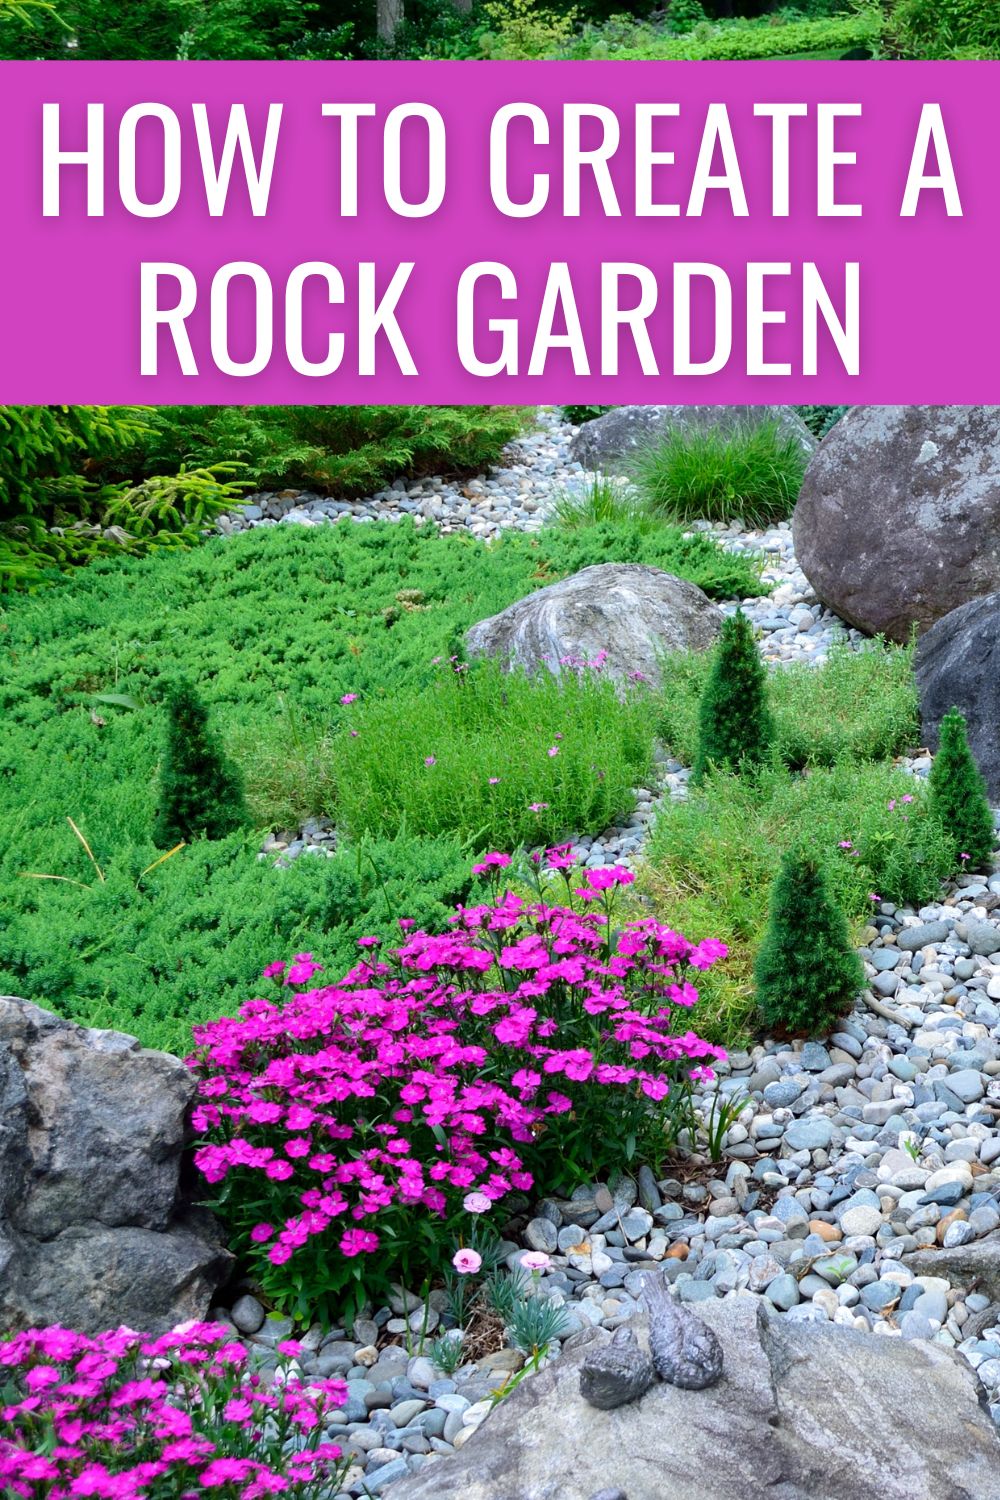 How to create a rock garden. 